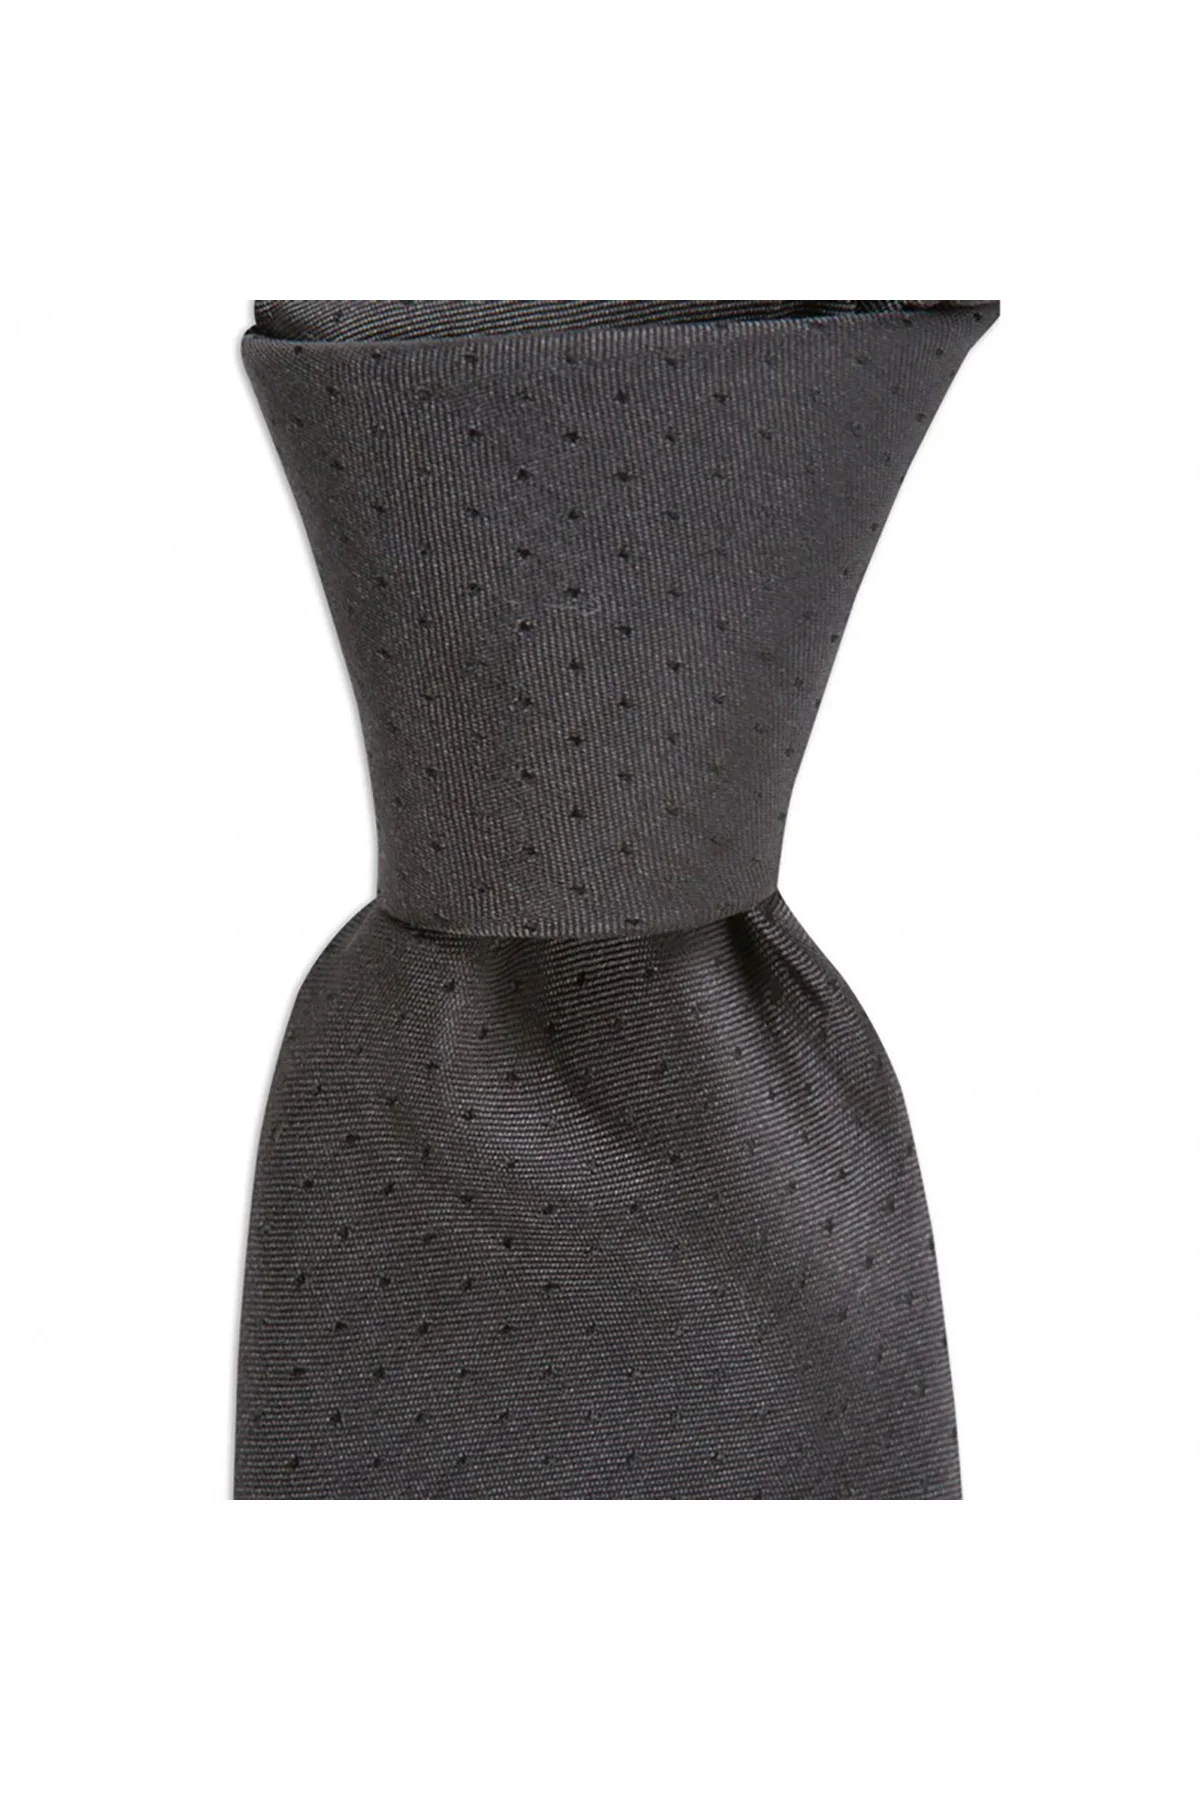 Мужской галстук современного дизайна, Сделано в Италии, Ширина 7,5 см, длина 145 см, отличный наряд с классическими мужскими костюмами